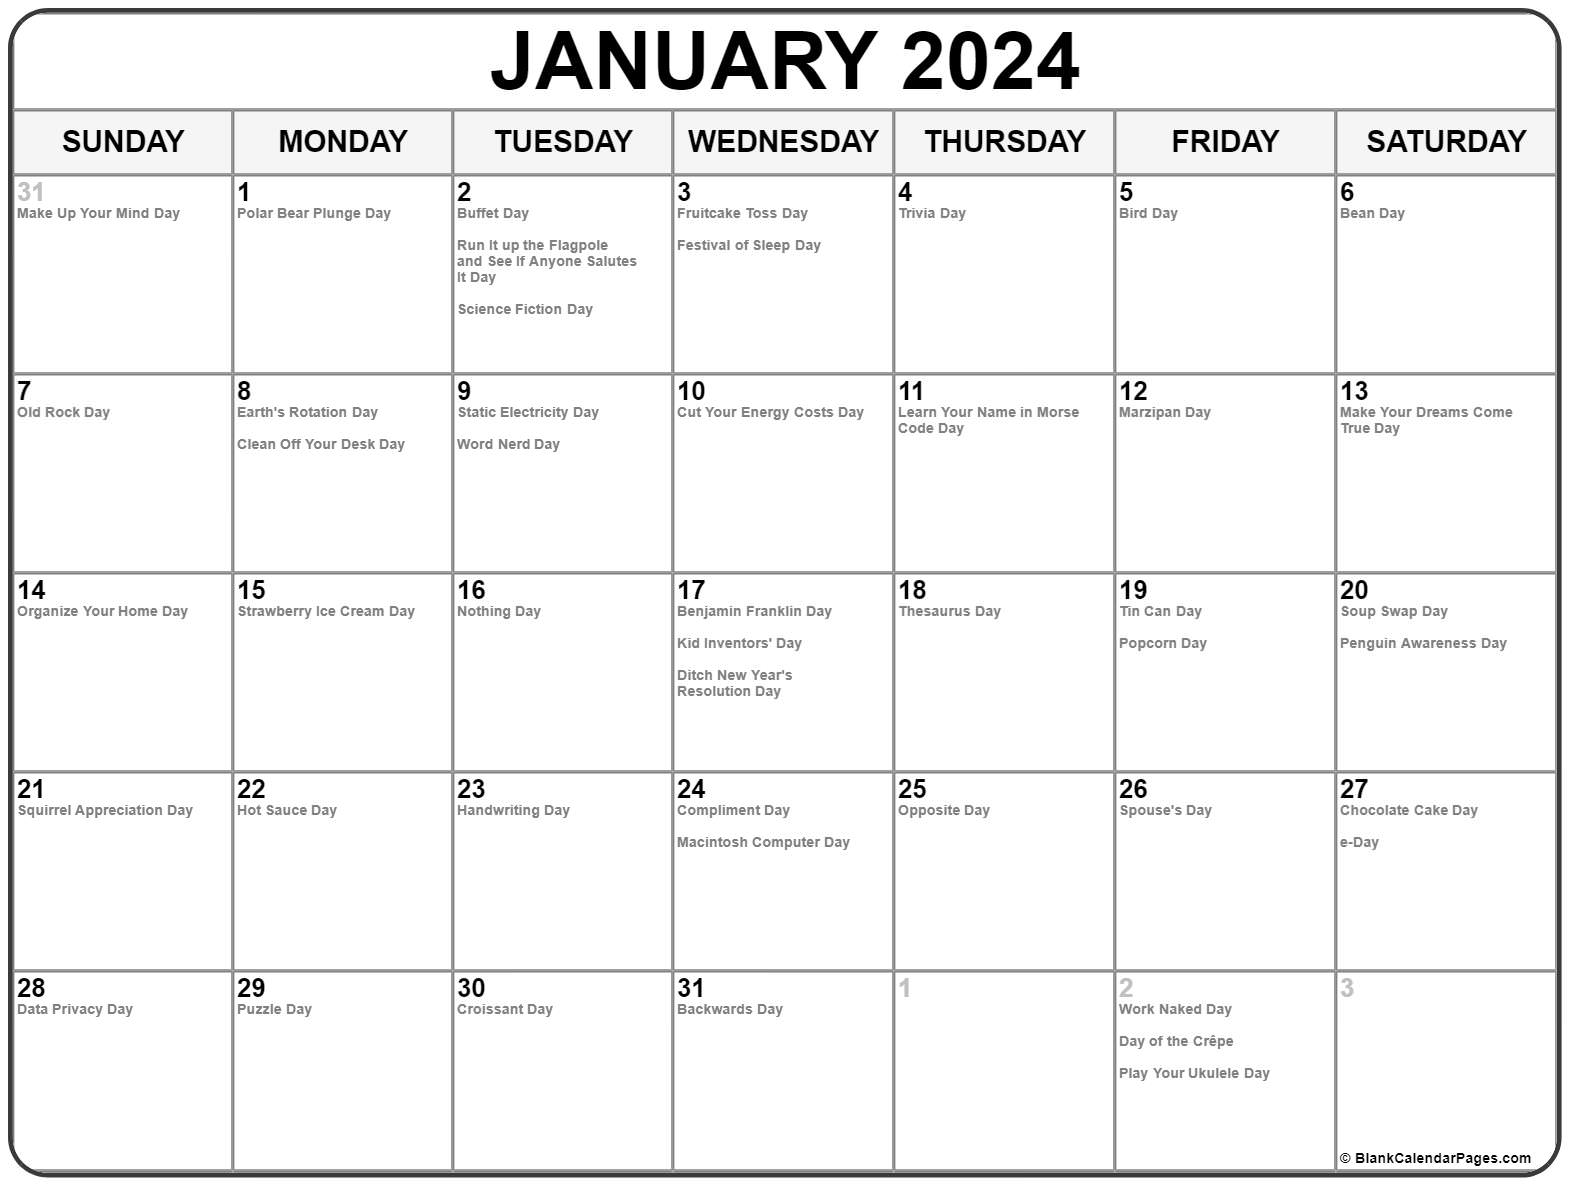 January Holidays 2023 Printable January Calendar 2023 Gambaran